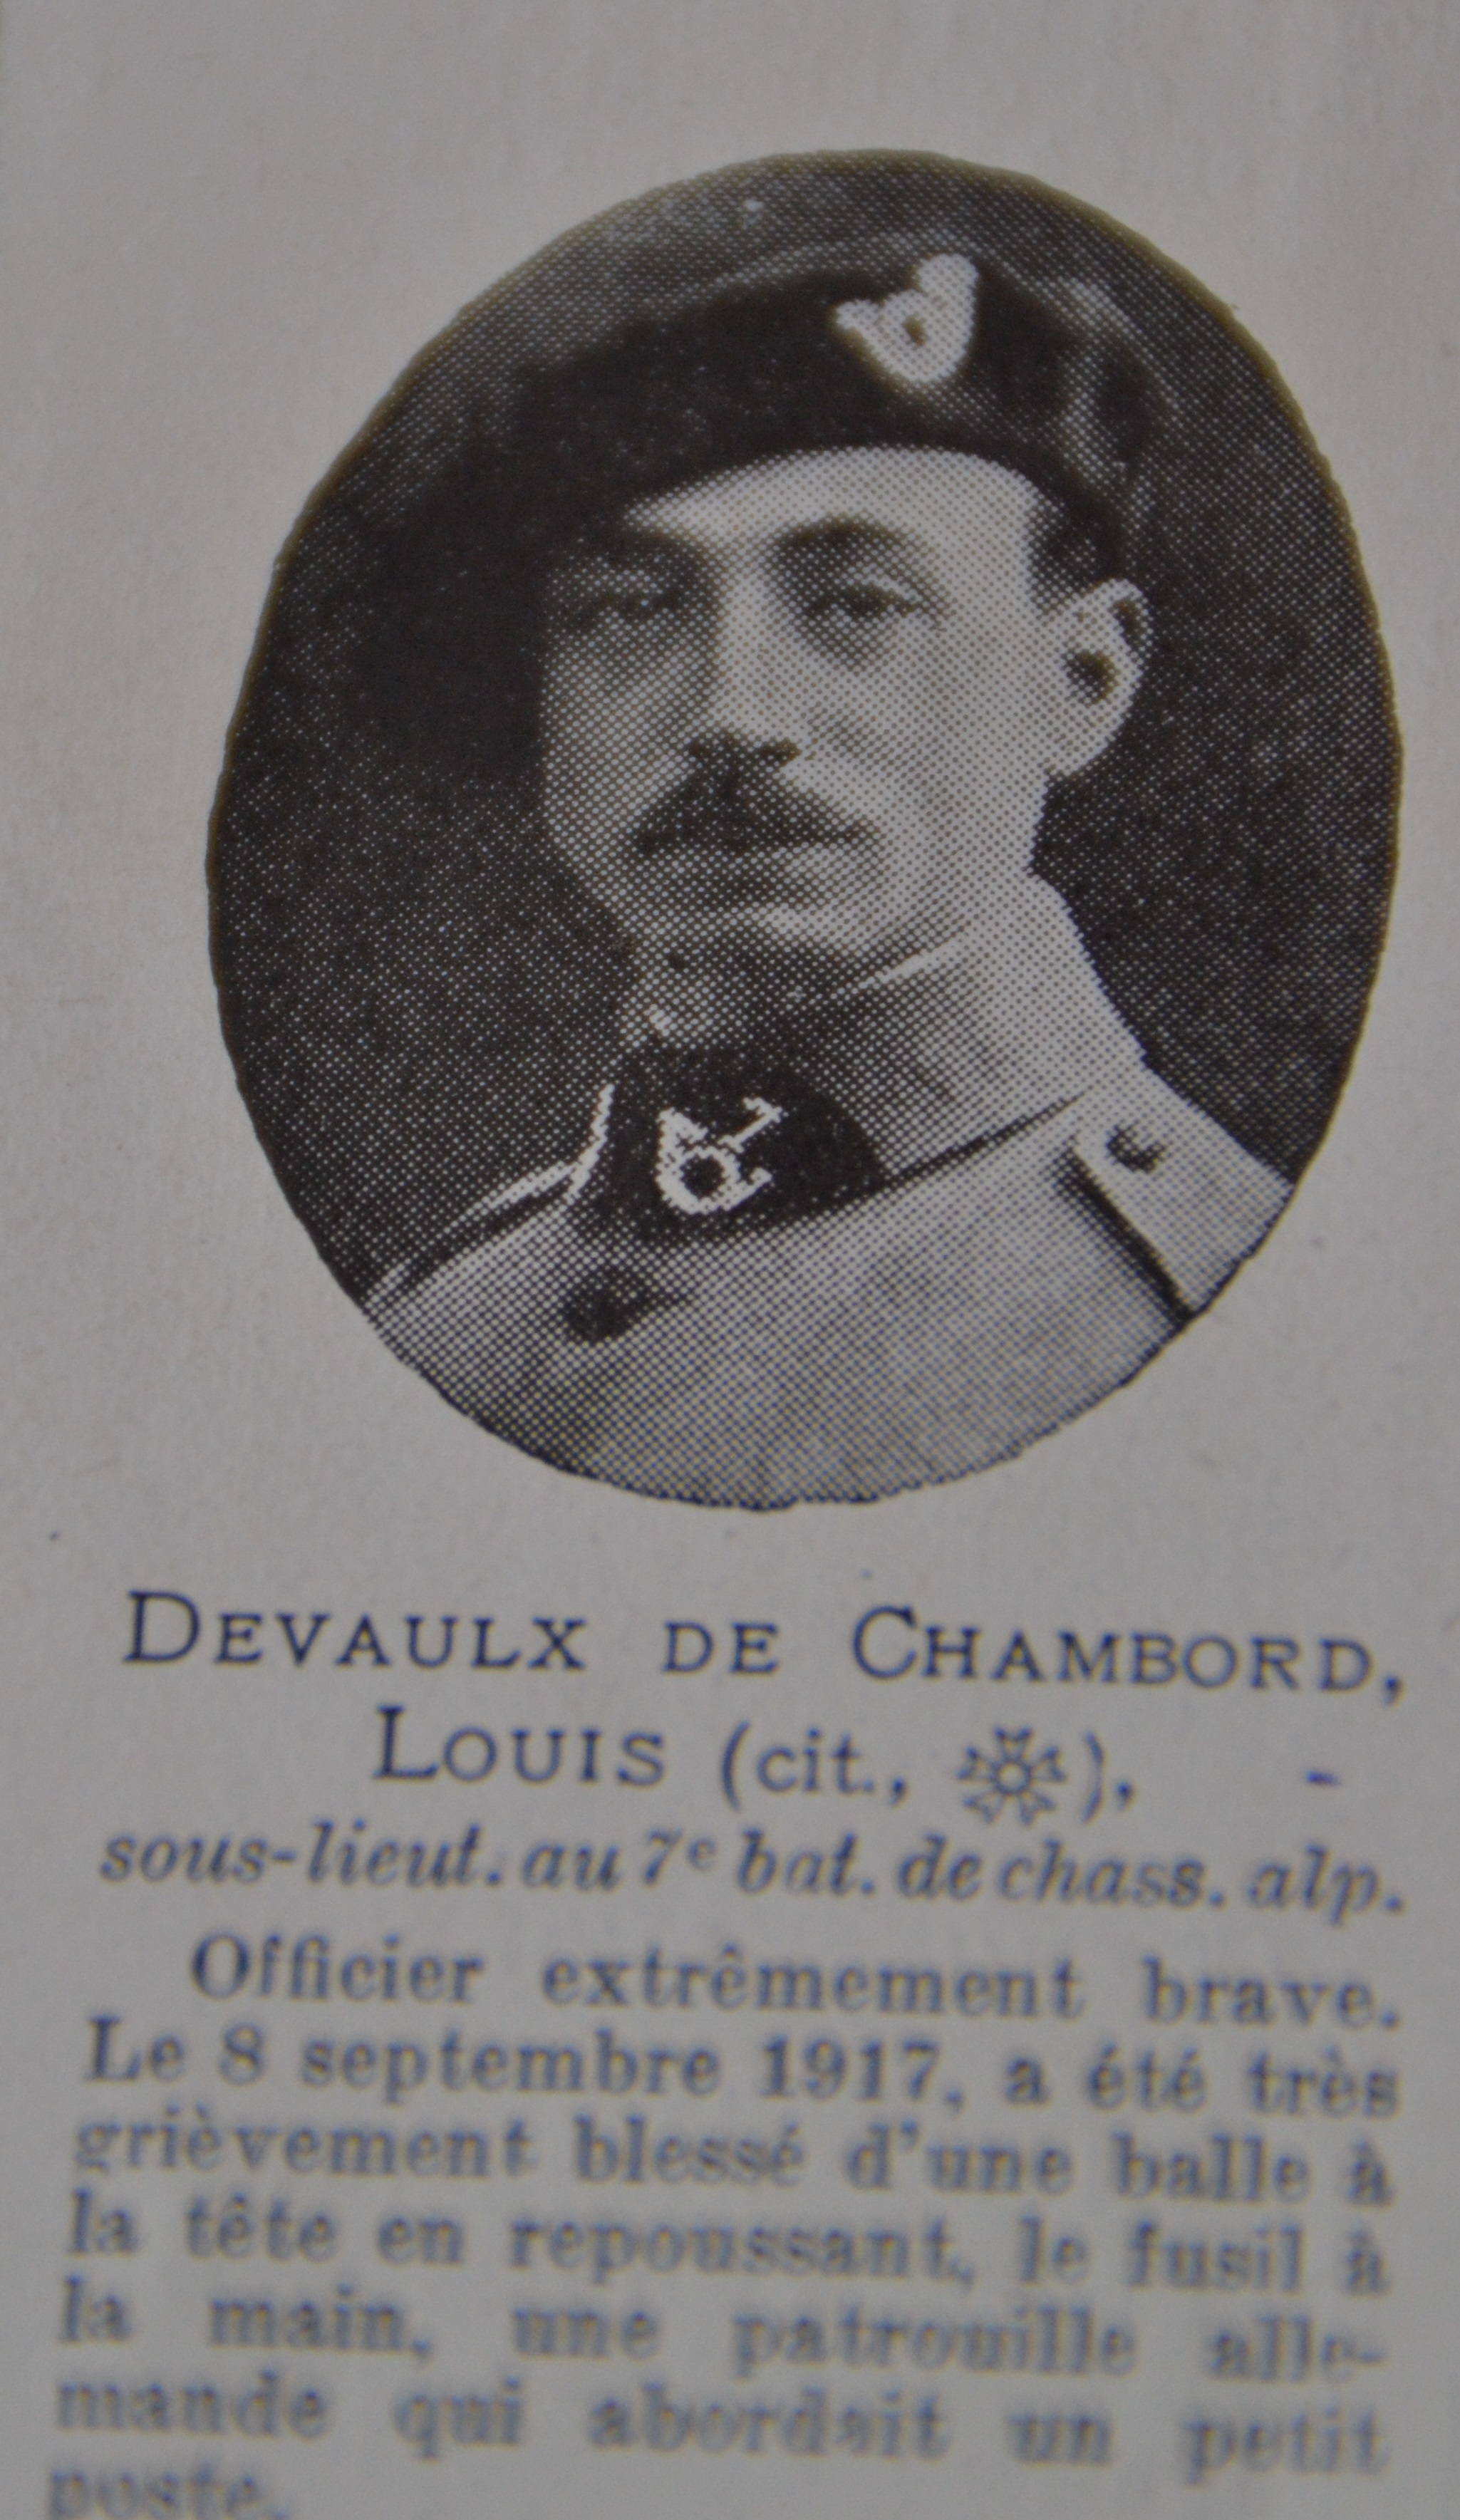 Devaulx de Chambord Louis portrait